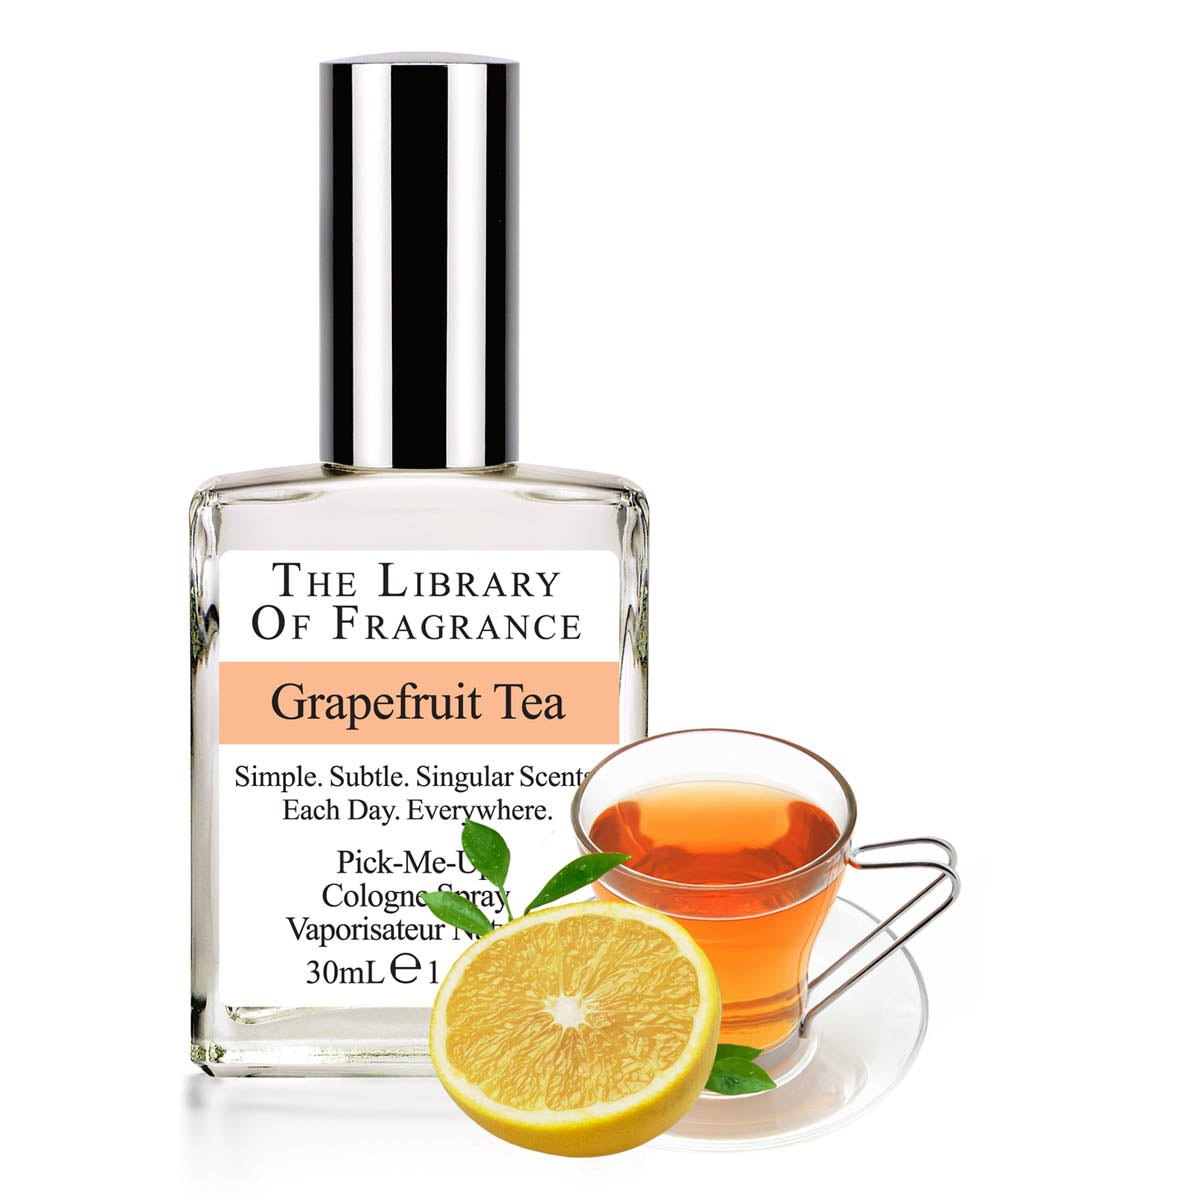 The Library Of Fragrance Grapefruit Tea Diffuser Oil 120ml AKA Demeter Fragrance